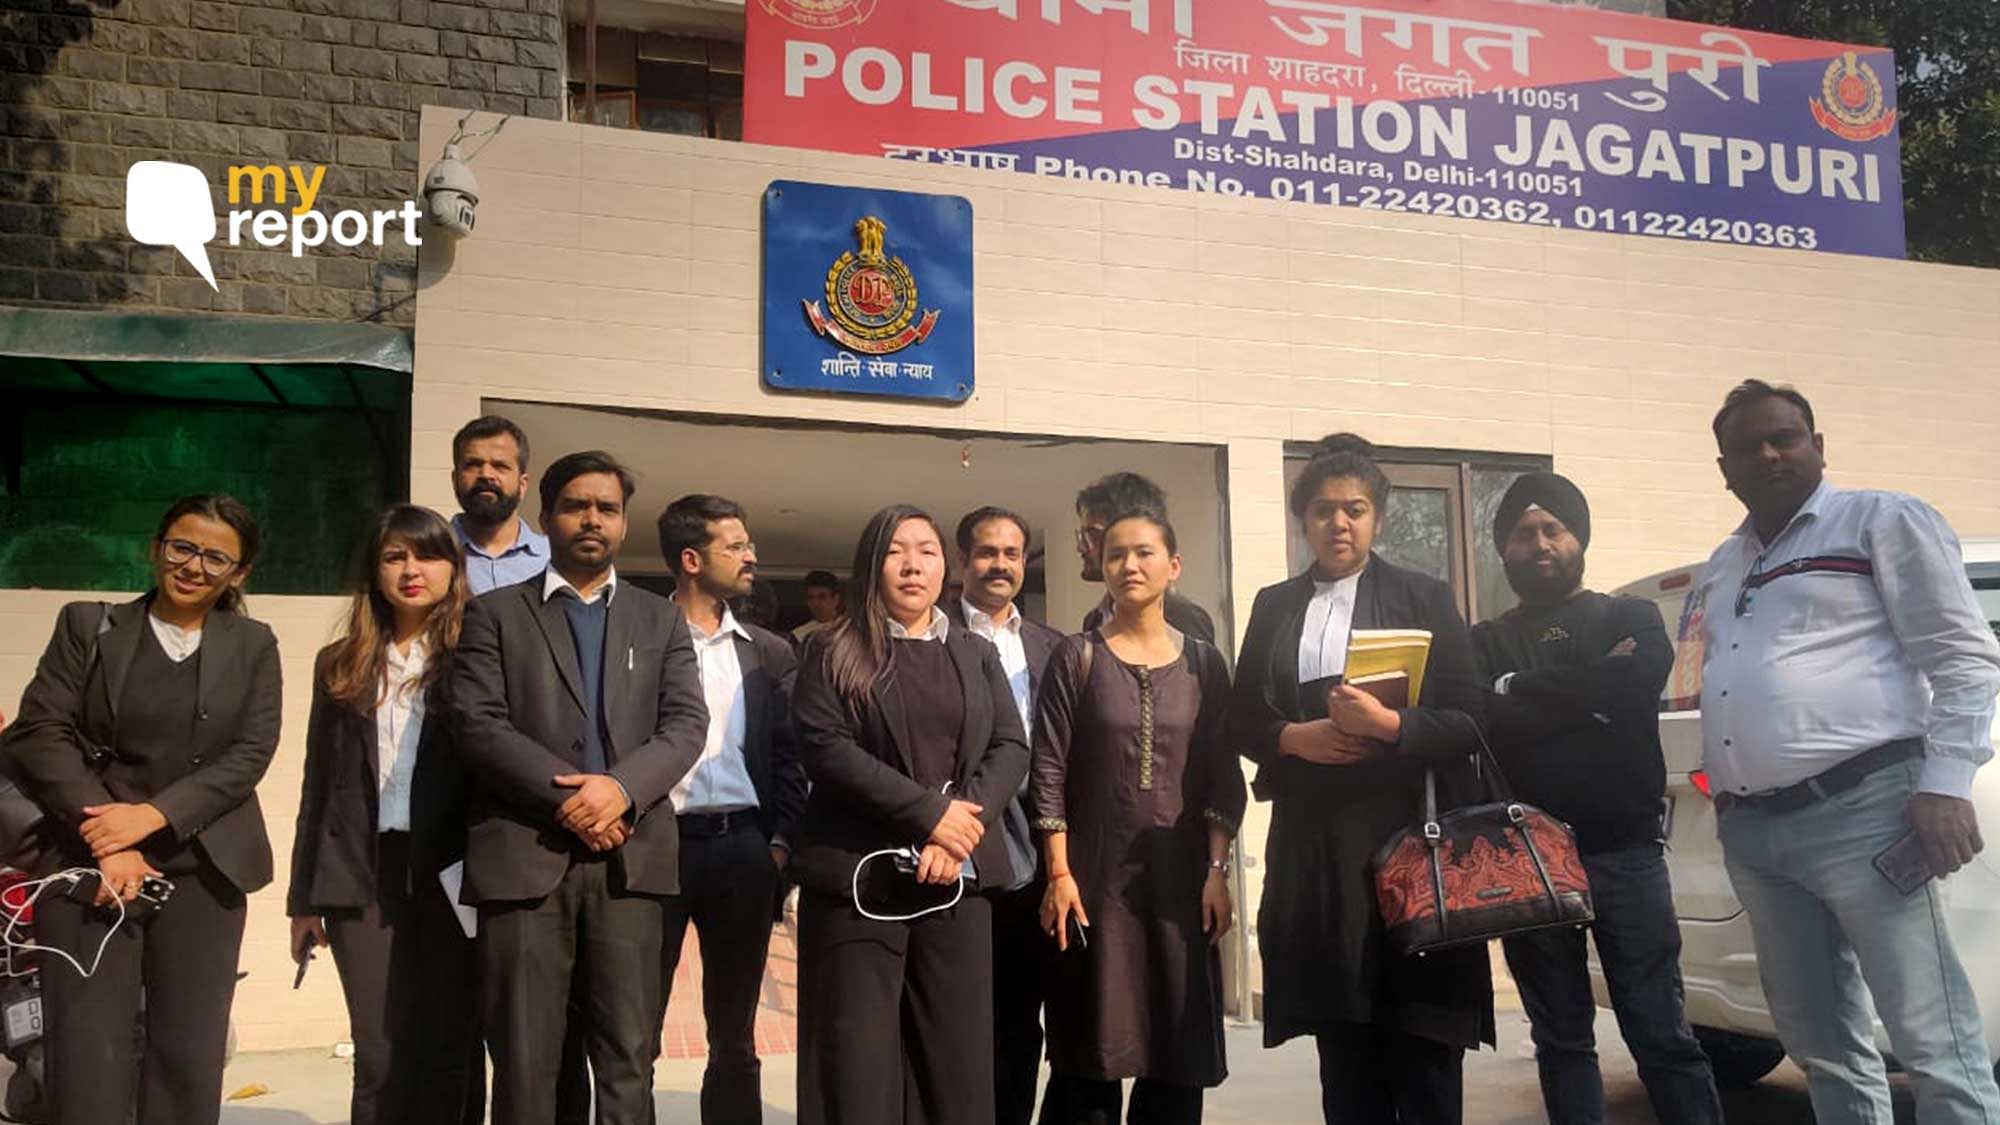 दिल्ली के जगतपुरी पुलिस स्टेशन में वकीलों के साथ पुलिस ने की मारपीट